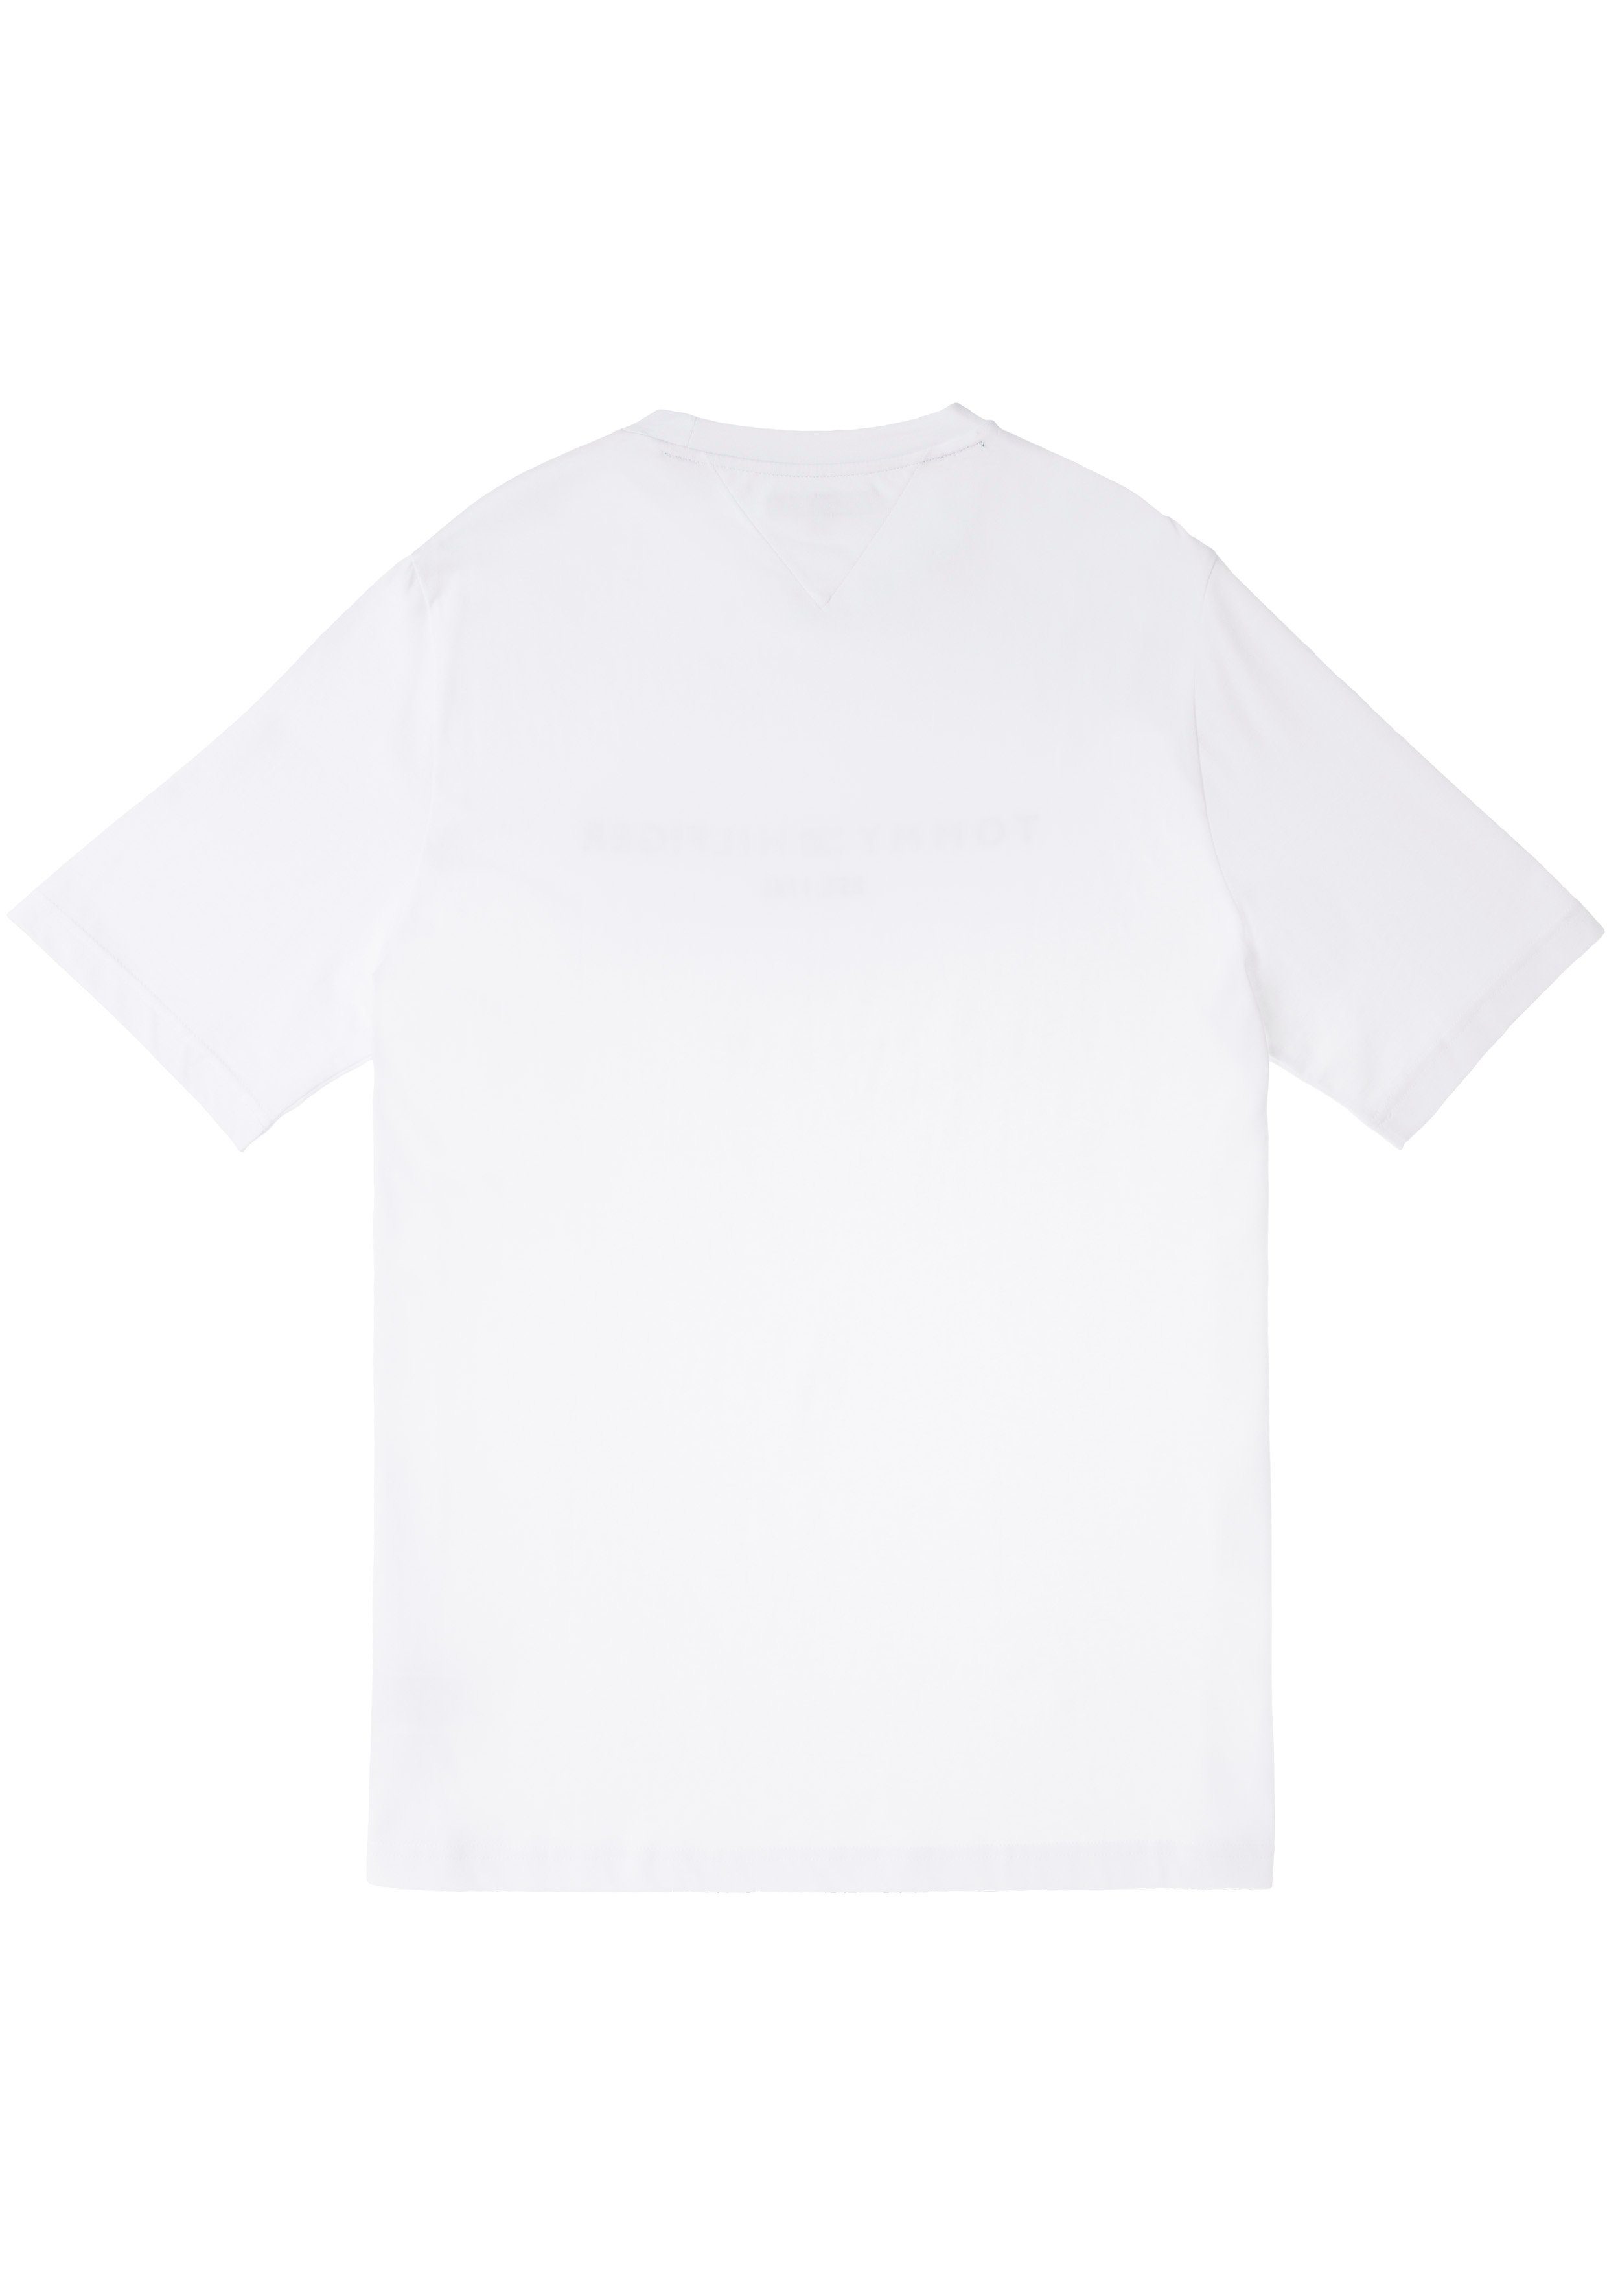 Brust & T-Shirt TEE-B Big auf BT-TOMMY Tommy Hilfiger weiß Tall Hilfiger mit Logoschriftzug Tommy der LOGO